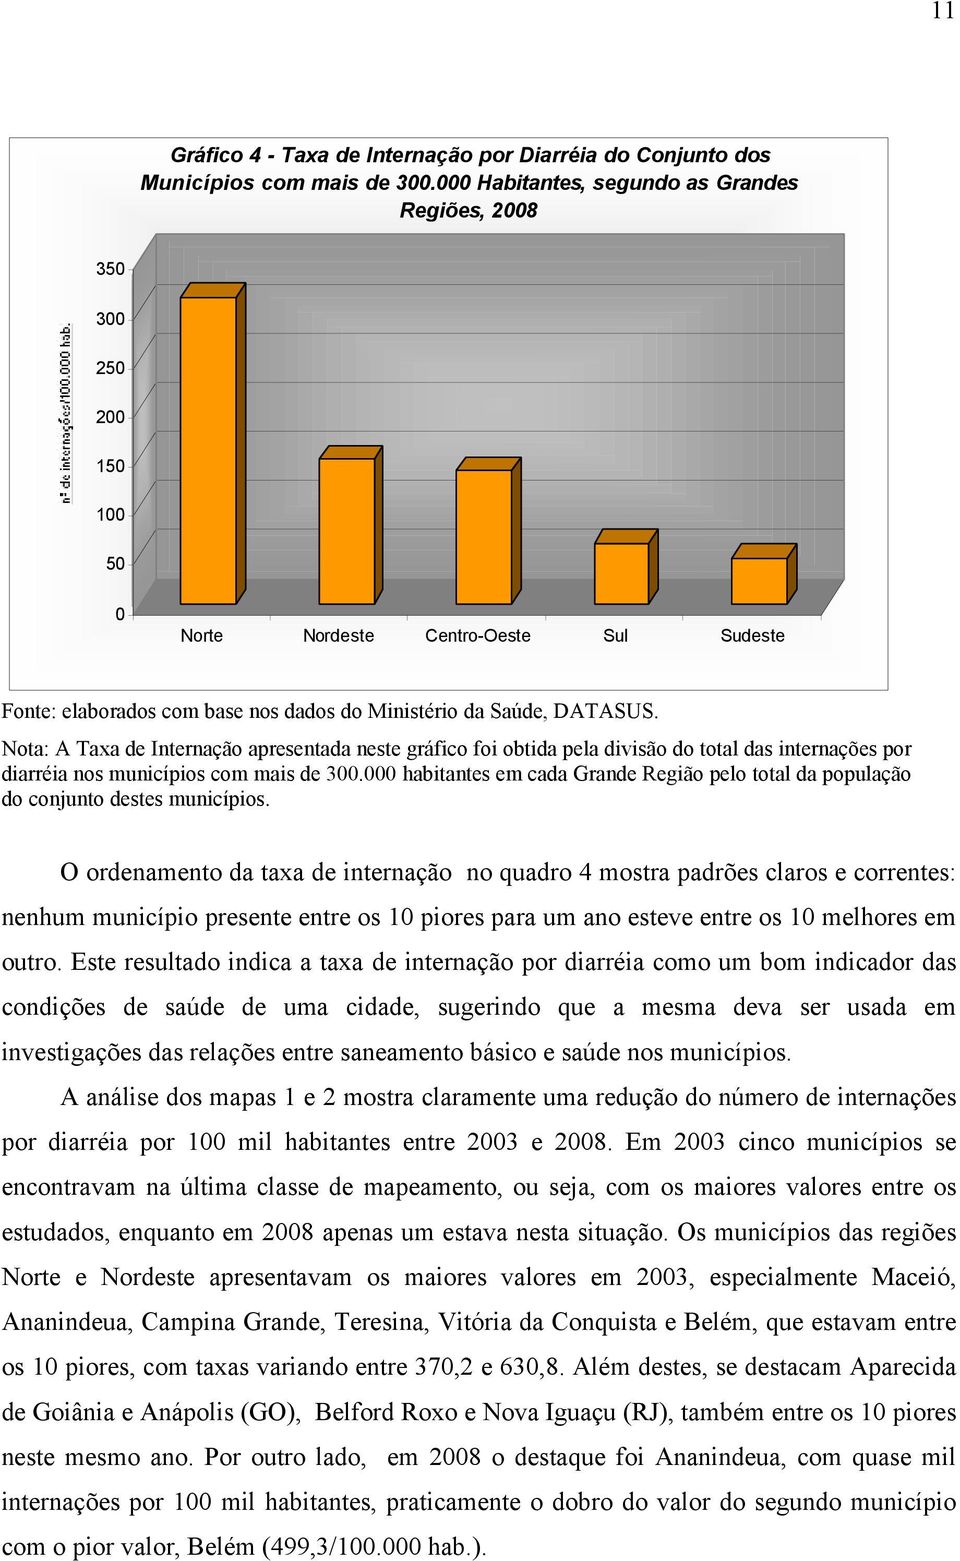 Nota: A Taxa de Internação apresentada neste gráfico foi obtida pela divisão do total das internações por diarréia nos municípios com mais de 300.